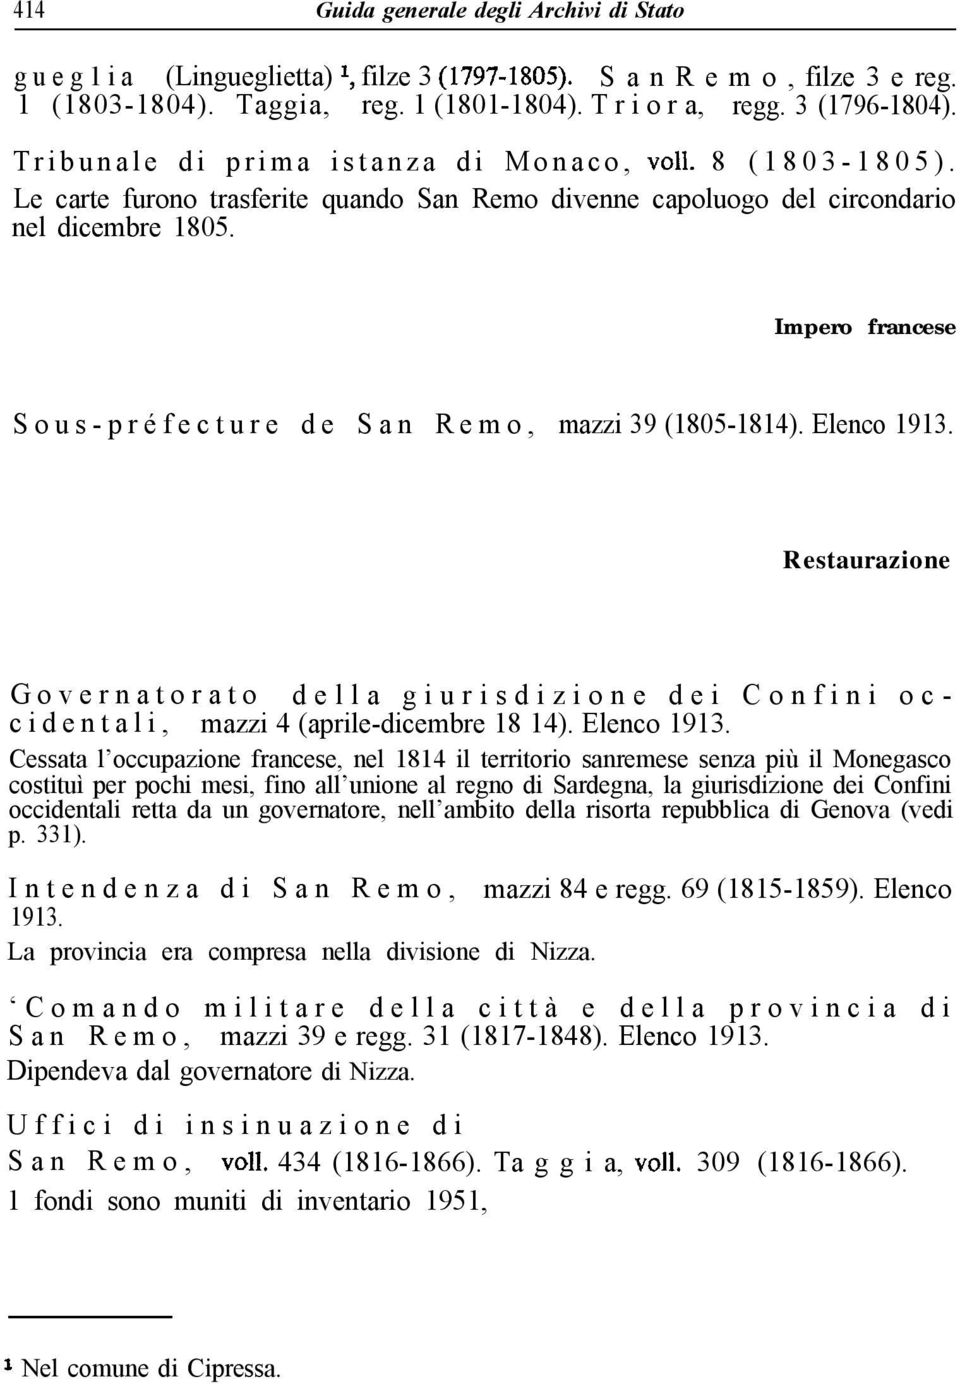 Impero francese Sous-préfecture de San Remo, mazzi 39 (1805-1814). Elenco 1913.